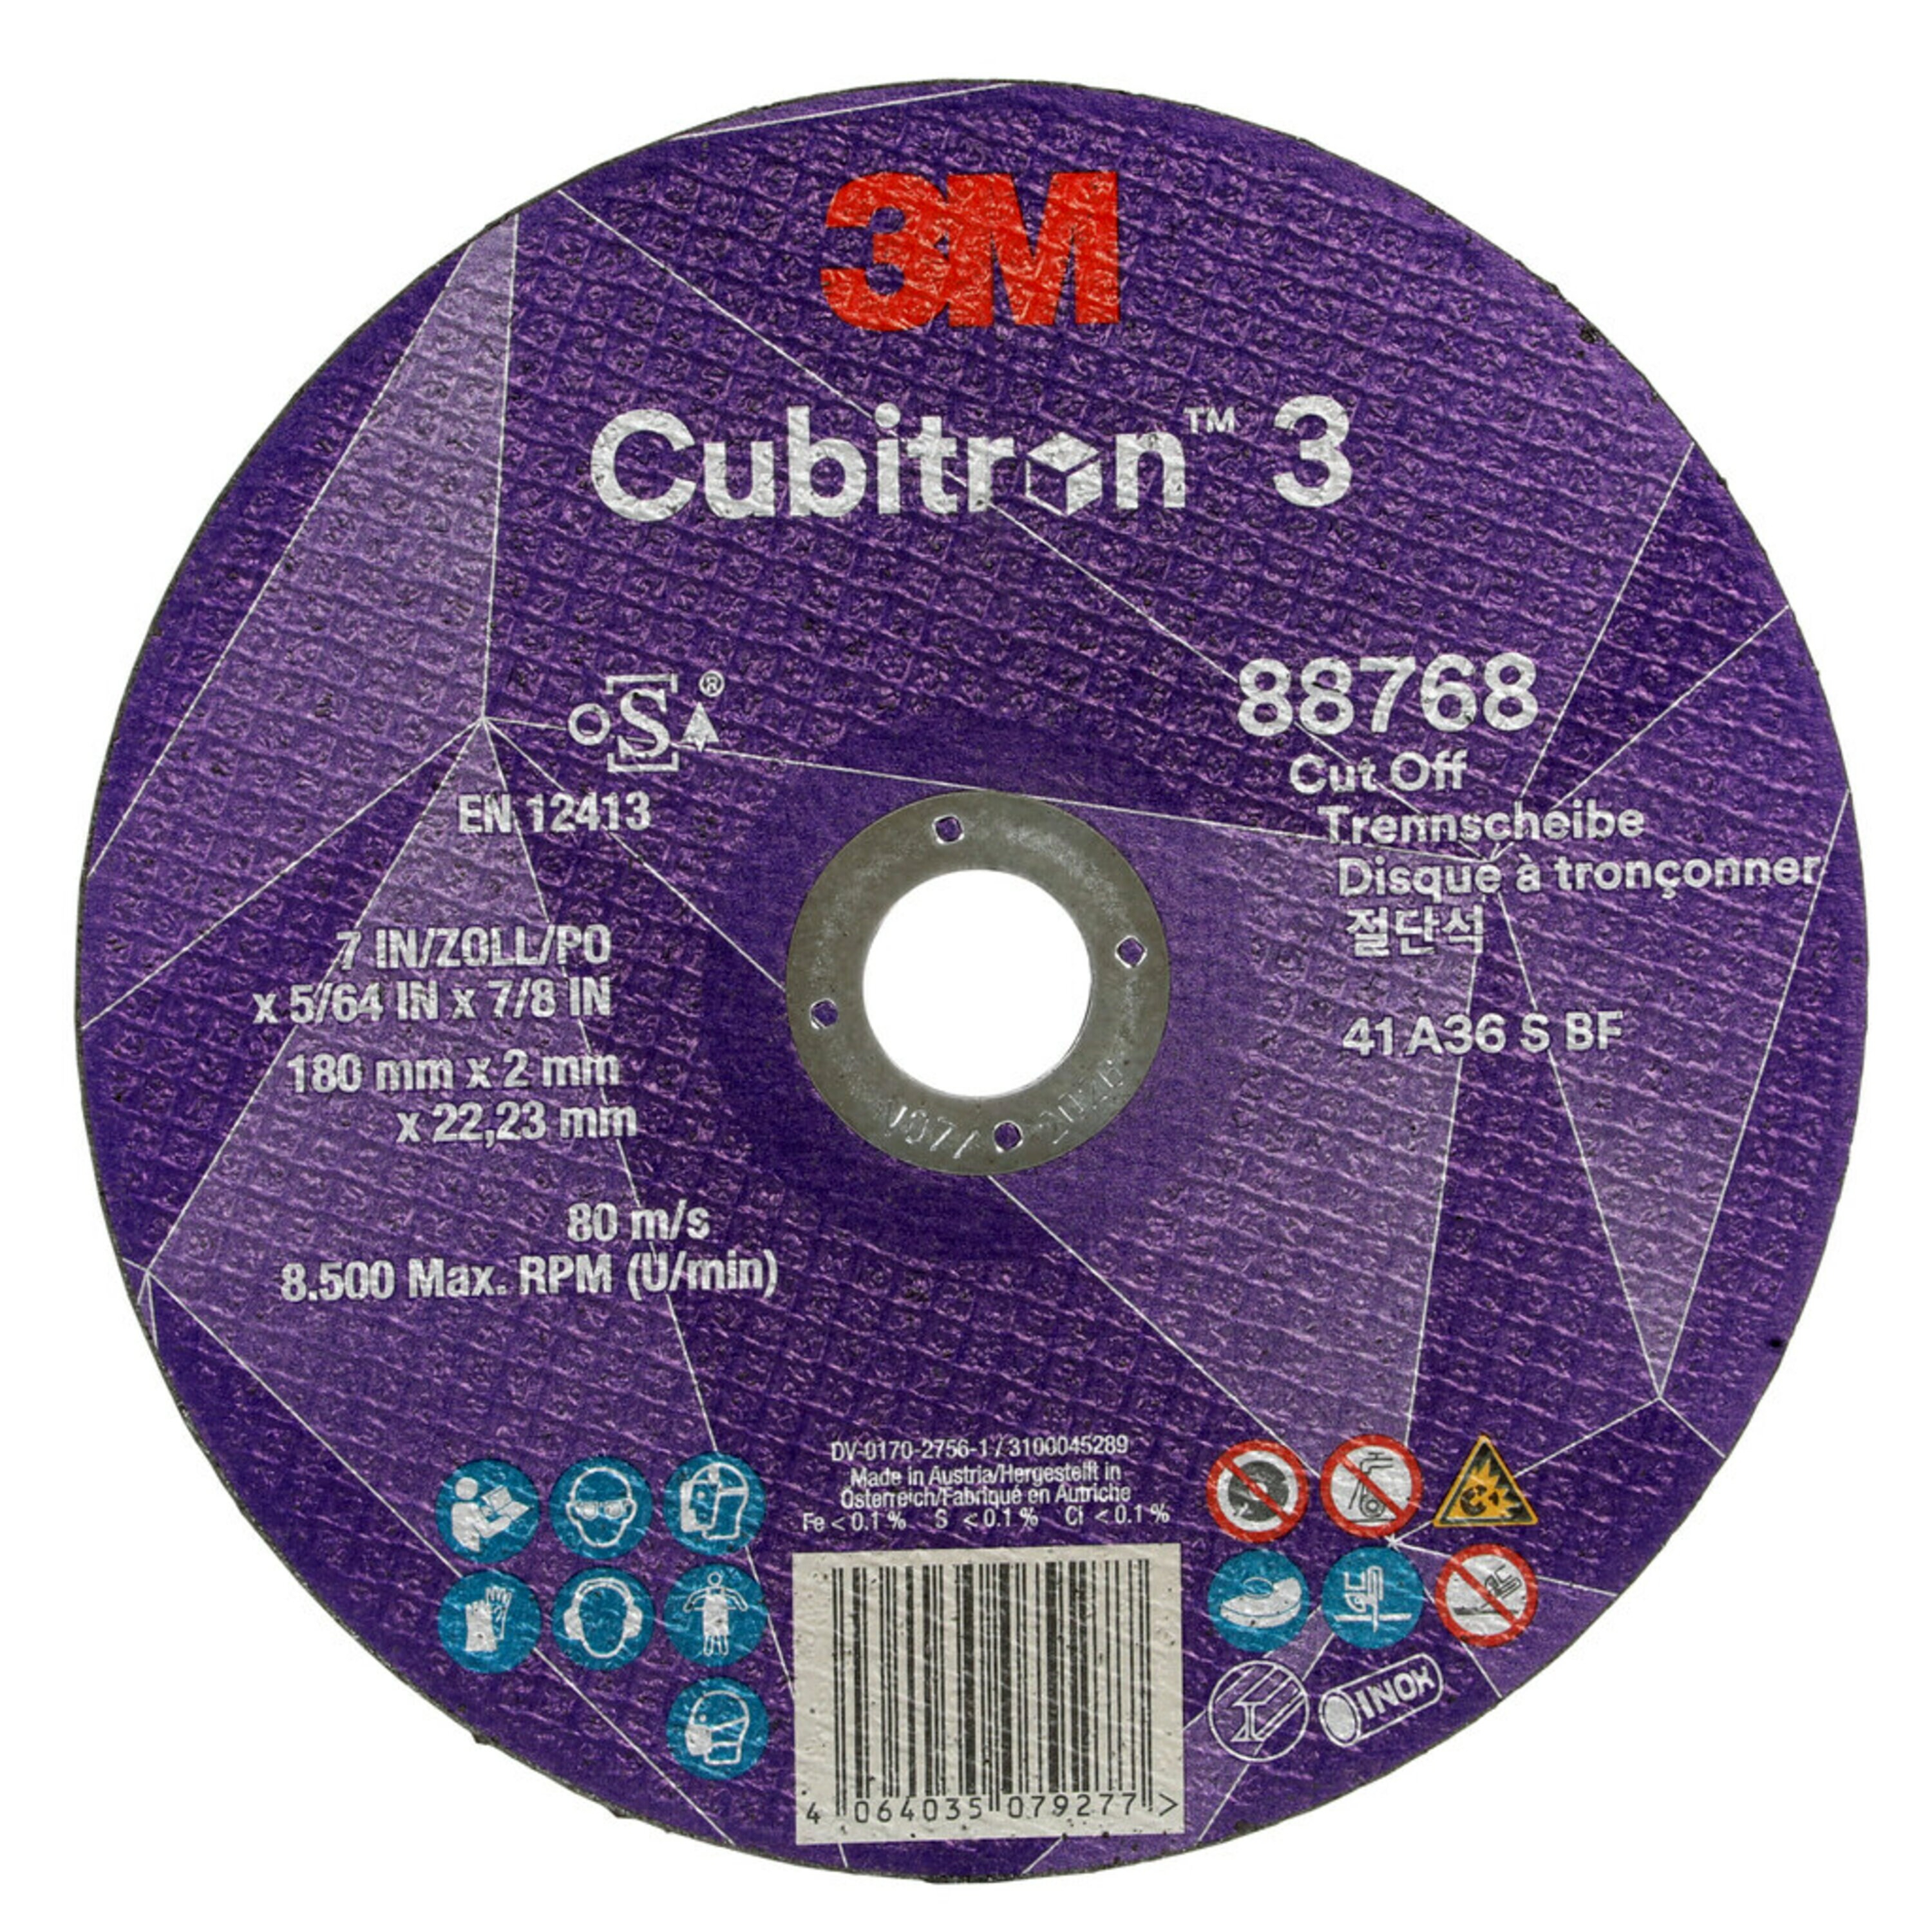 3M Cubitron 3 disco da taglio, 180 mm, 2 mm, 22,23 mm, 36 , tipo 41 #88768